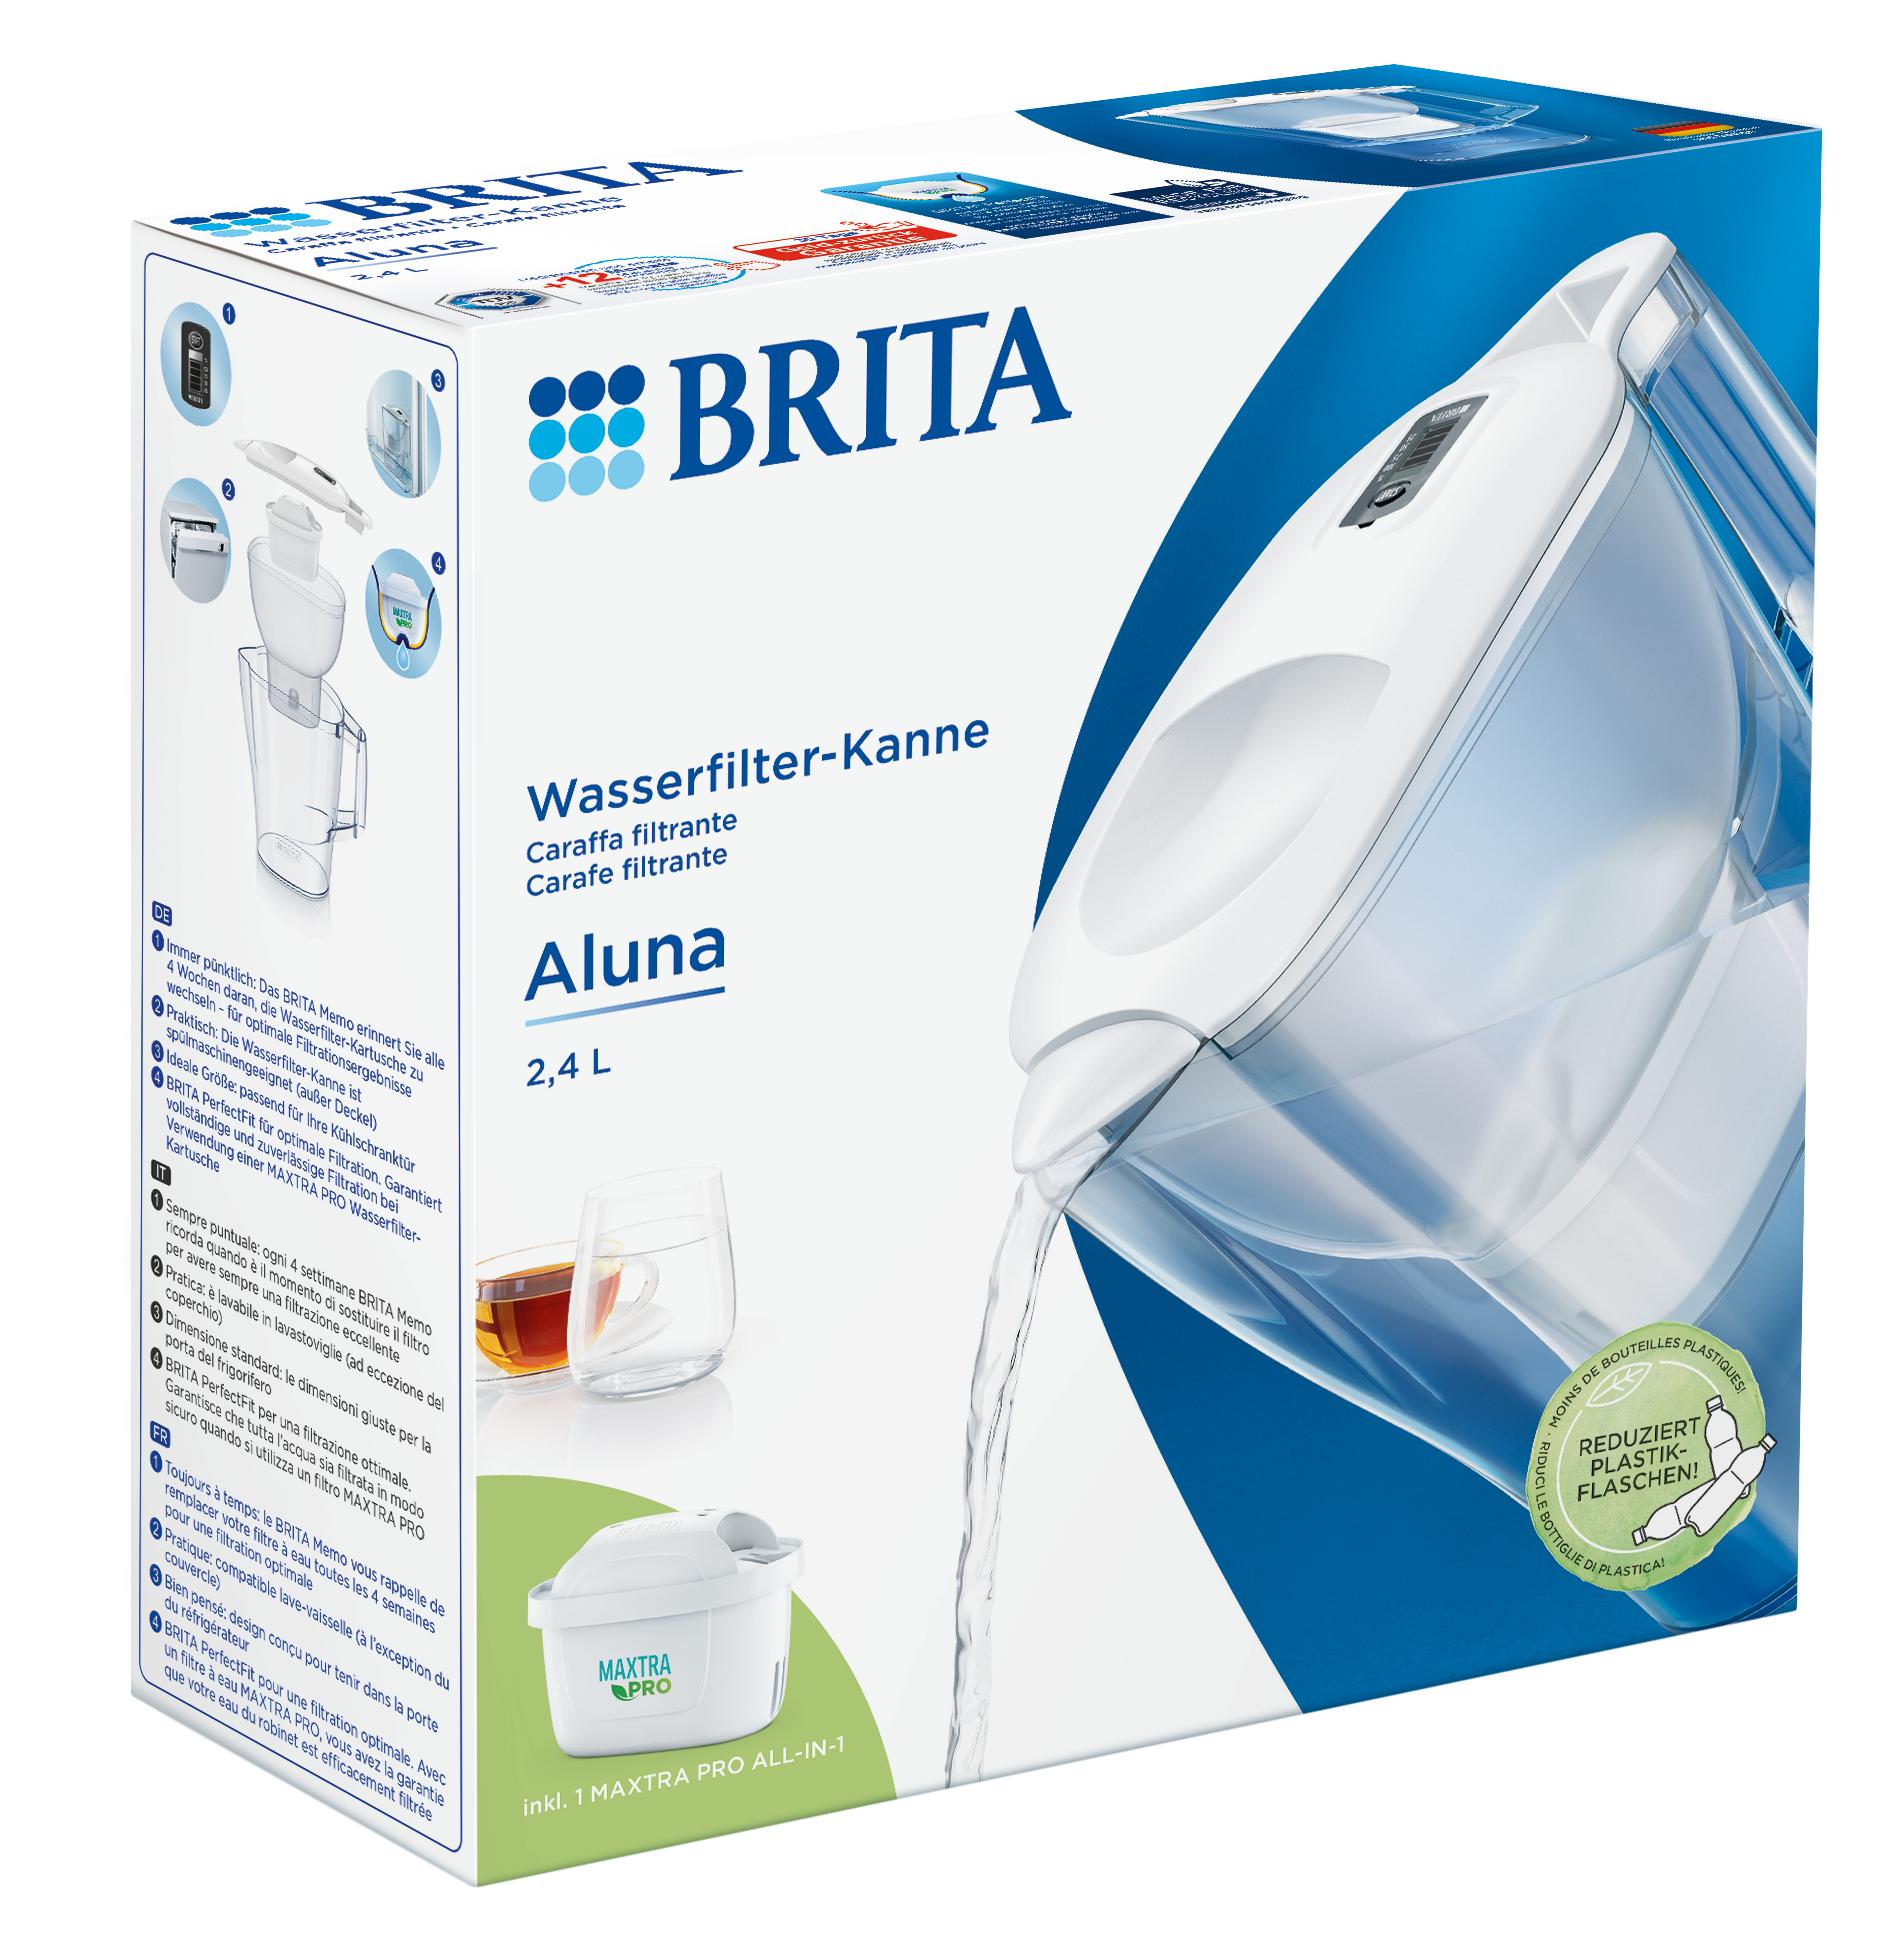 BRITA® Wasserfilter-Kanne Aluna weiß » Farbe wählen: Blau